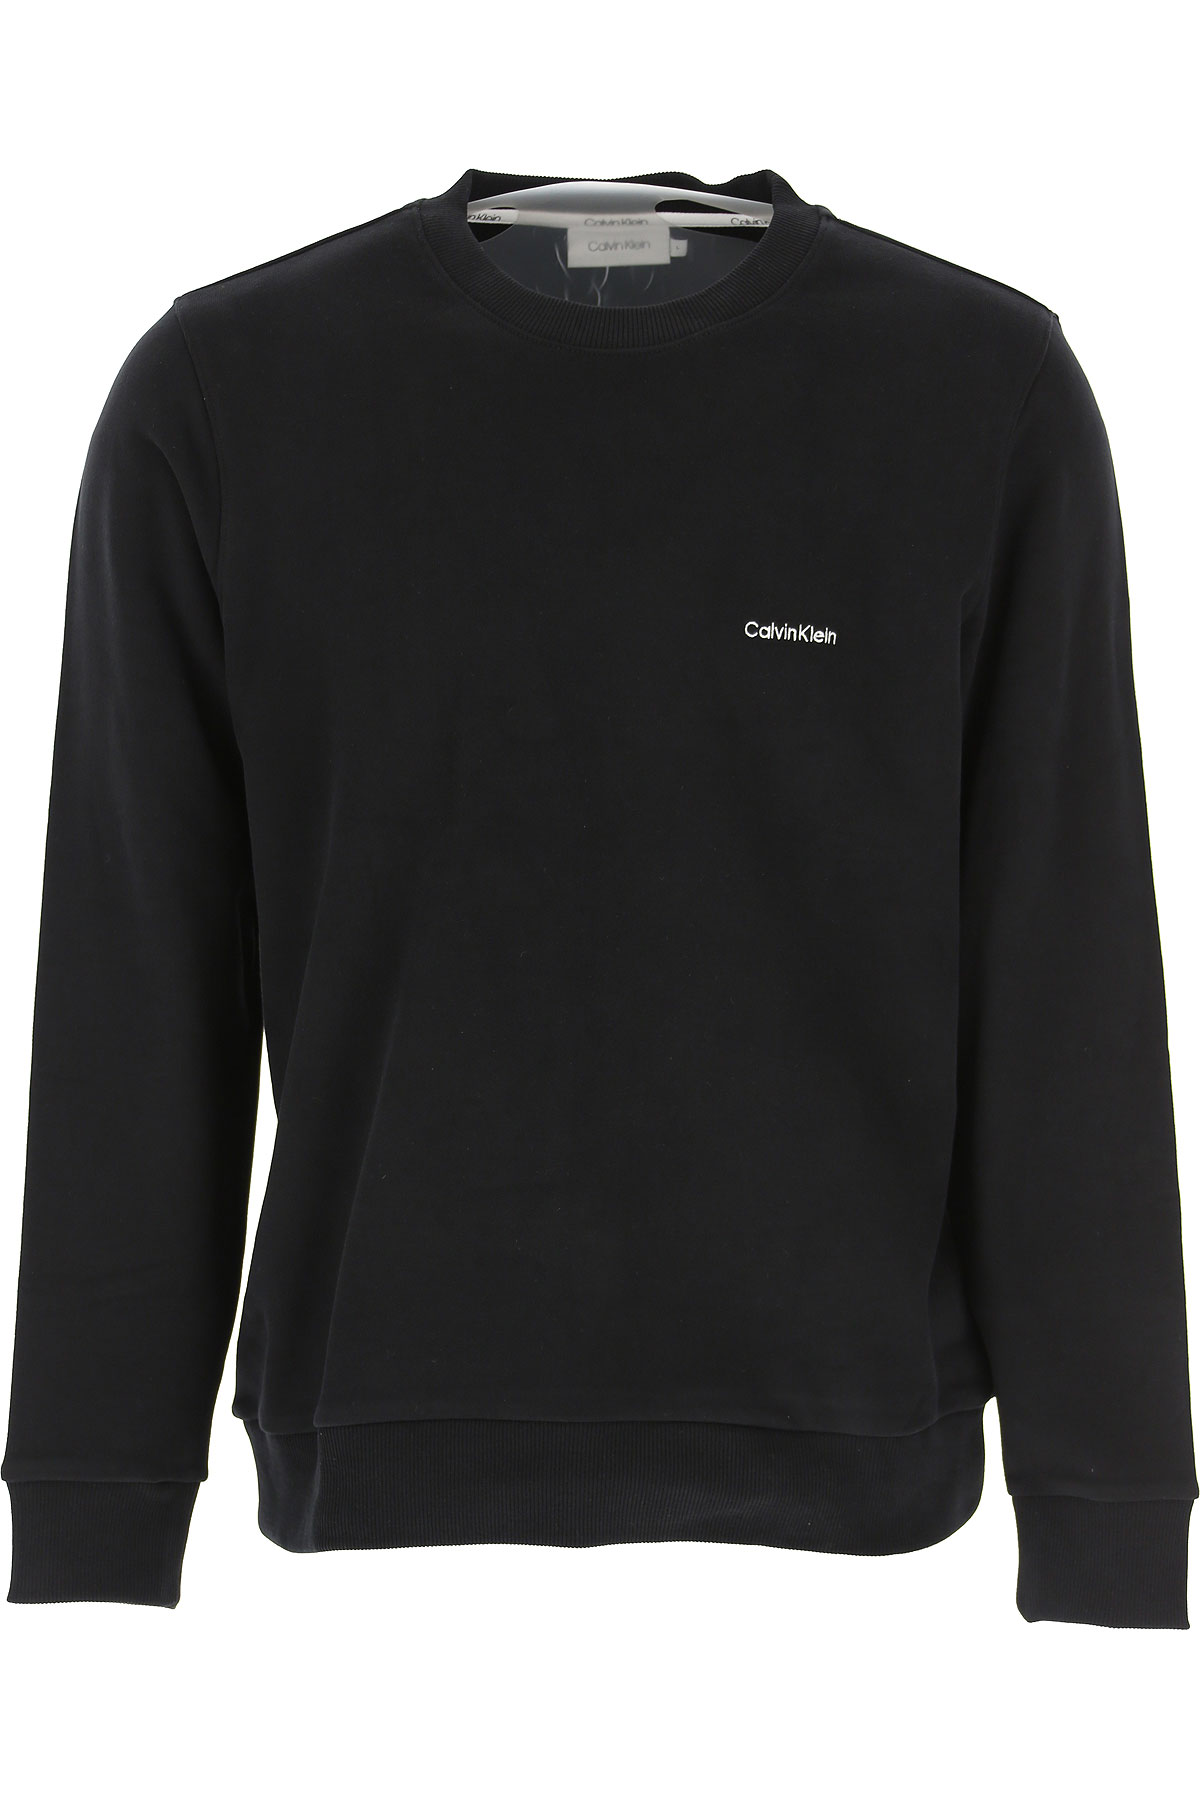 Calvin Klein Sweatshirt für Herren, Kapuzenpulli, Hoodie, Sweats Günstig im Sale, Schwarz, Baumwolle, 2017, L M